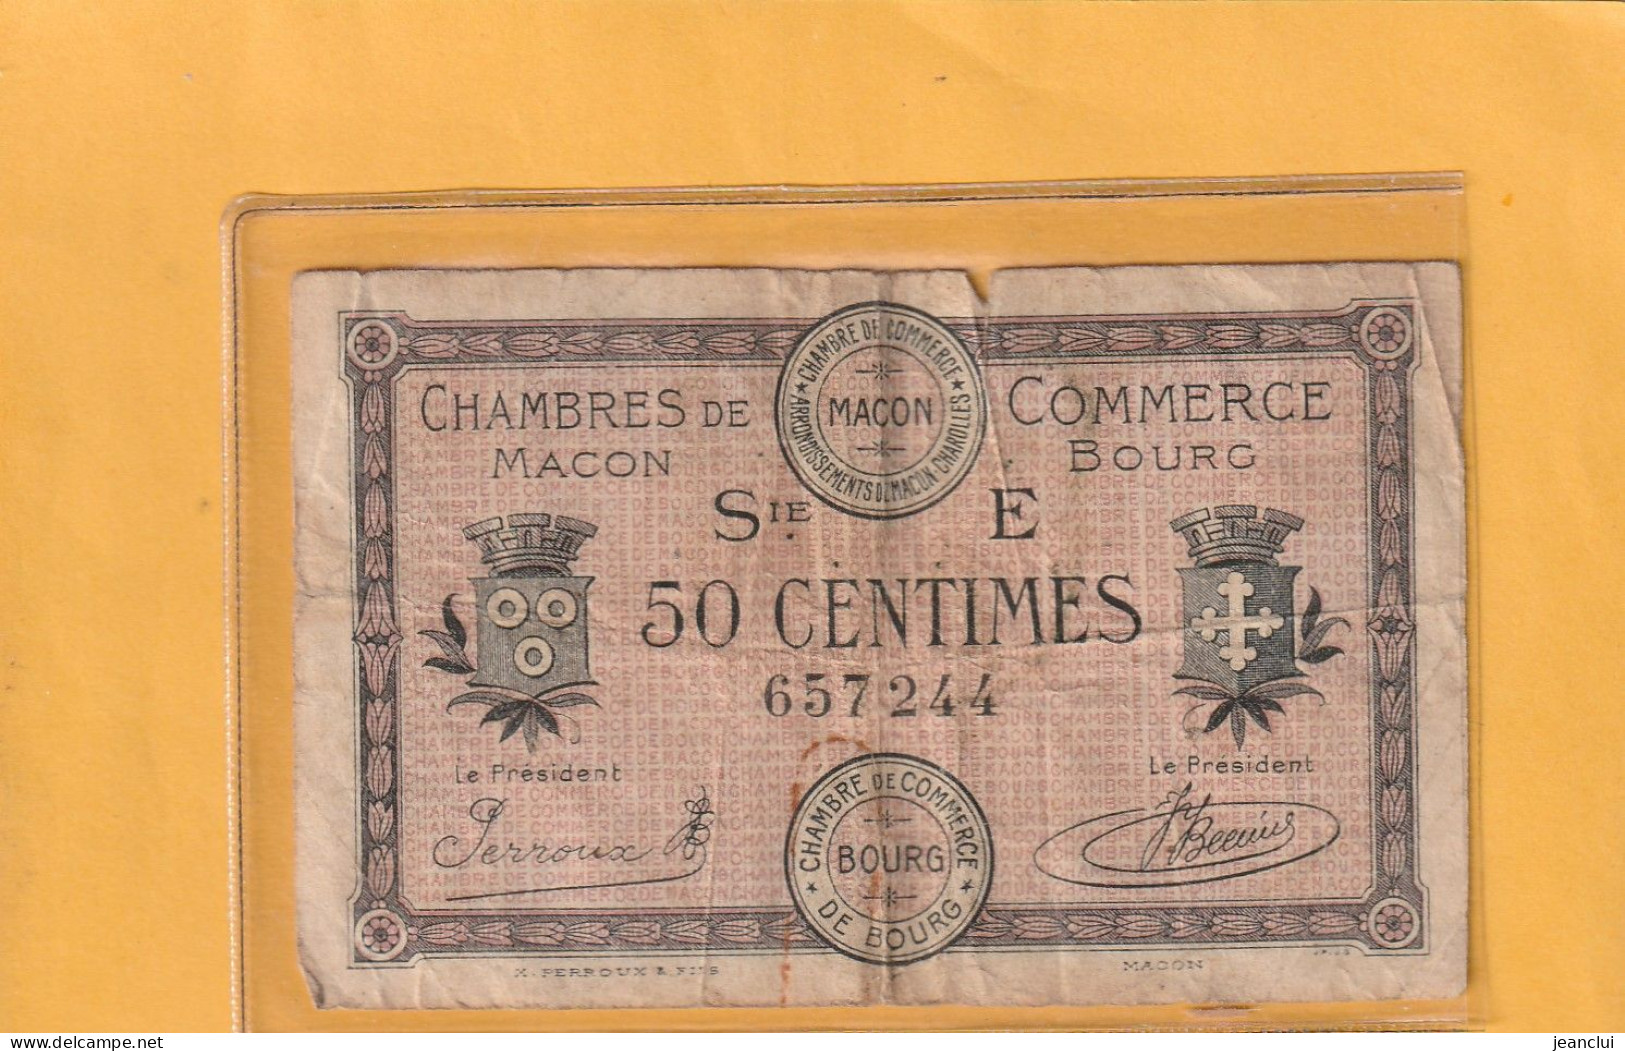 CHAMBRE DE COMMERCE DE MACON - BOURG . 50 Cts . EMISSION DU 27-4-1920 . SERIE E . N° 657244 . 2 SCANNES . BILLET USITE - Cámara De Comercio